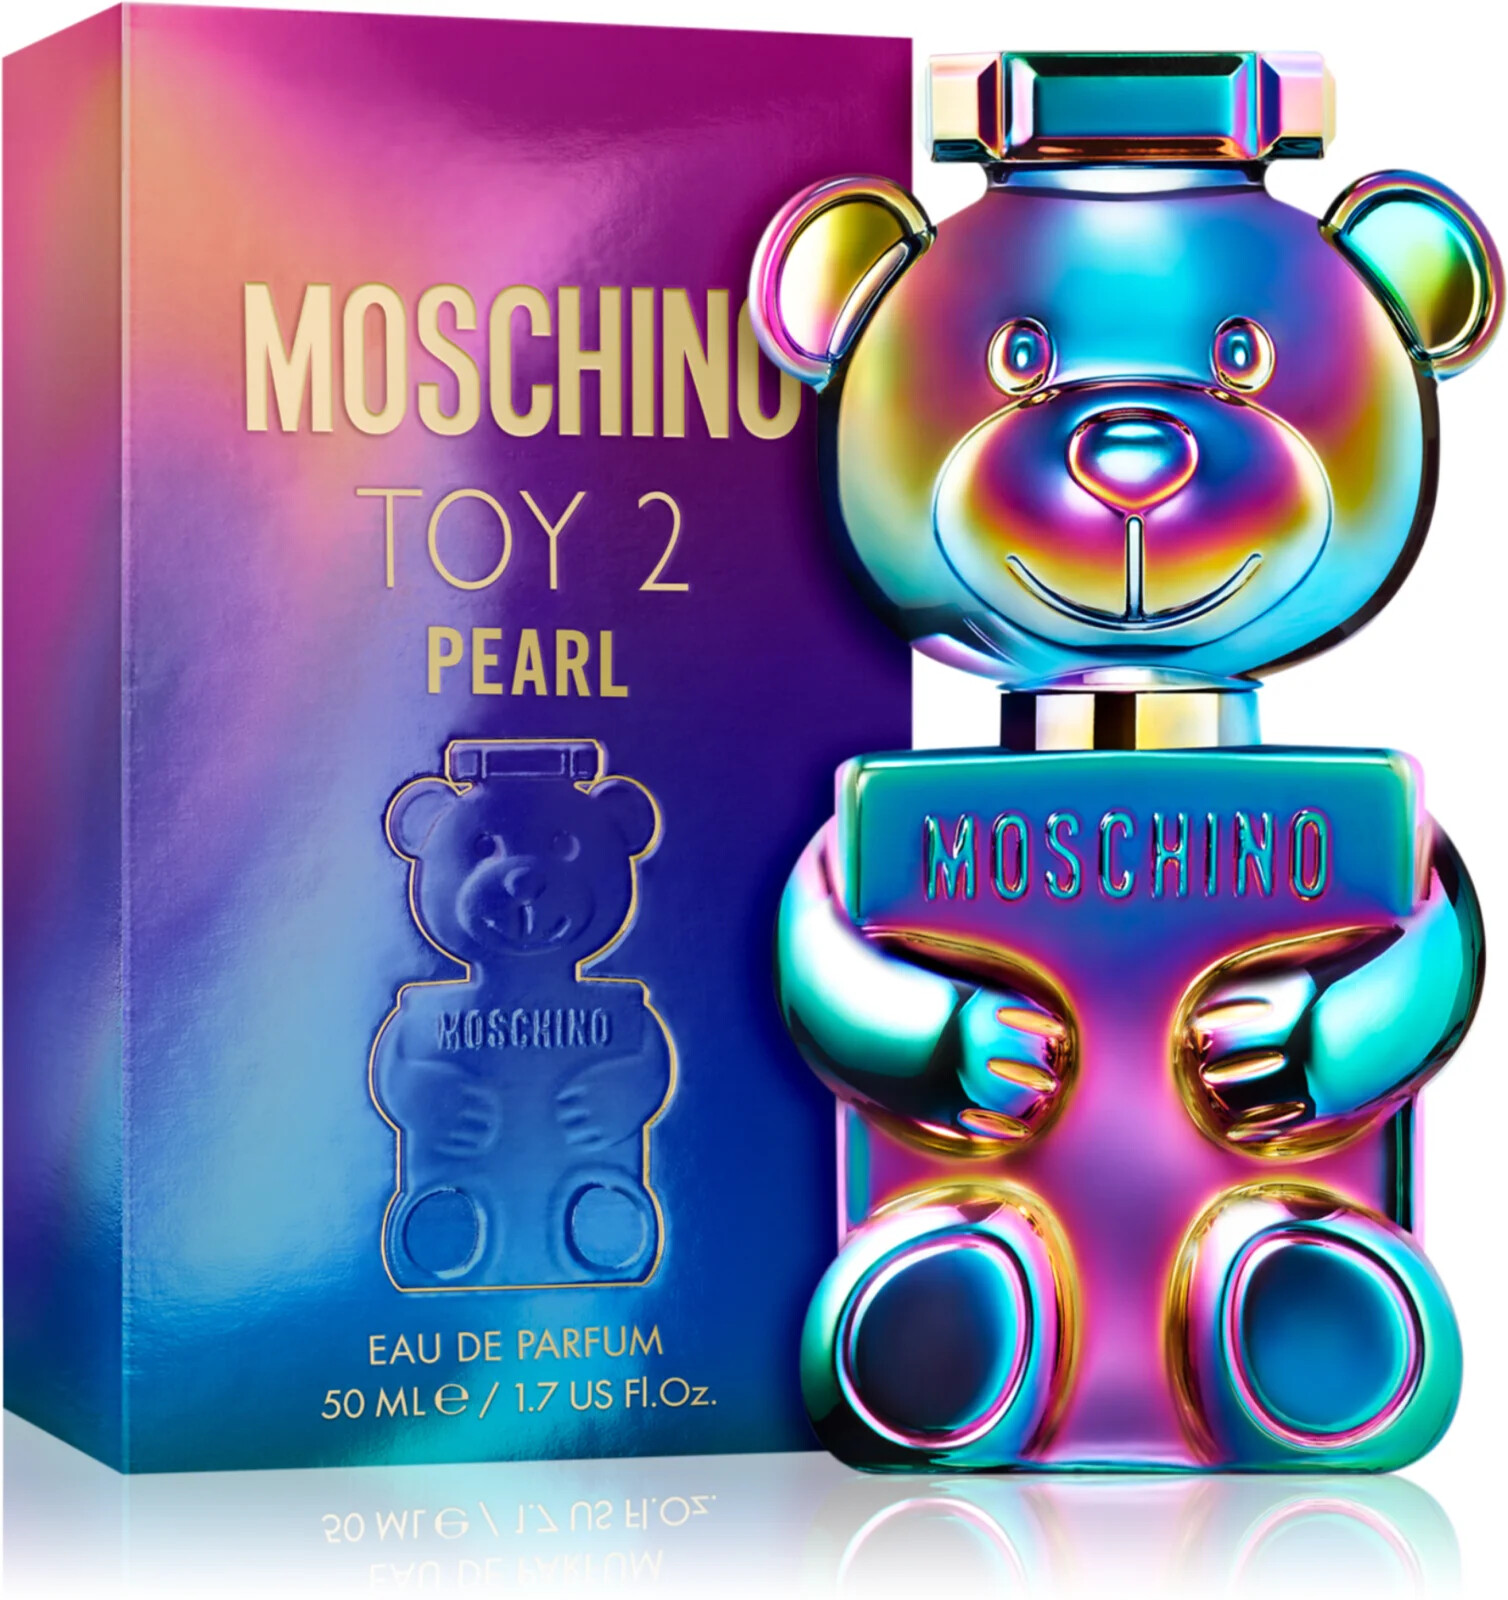 Moschino Toy 2 Pearl parfémovaná voda pro ženy 50 ml